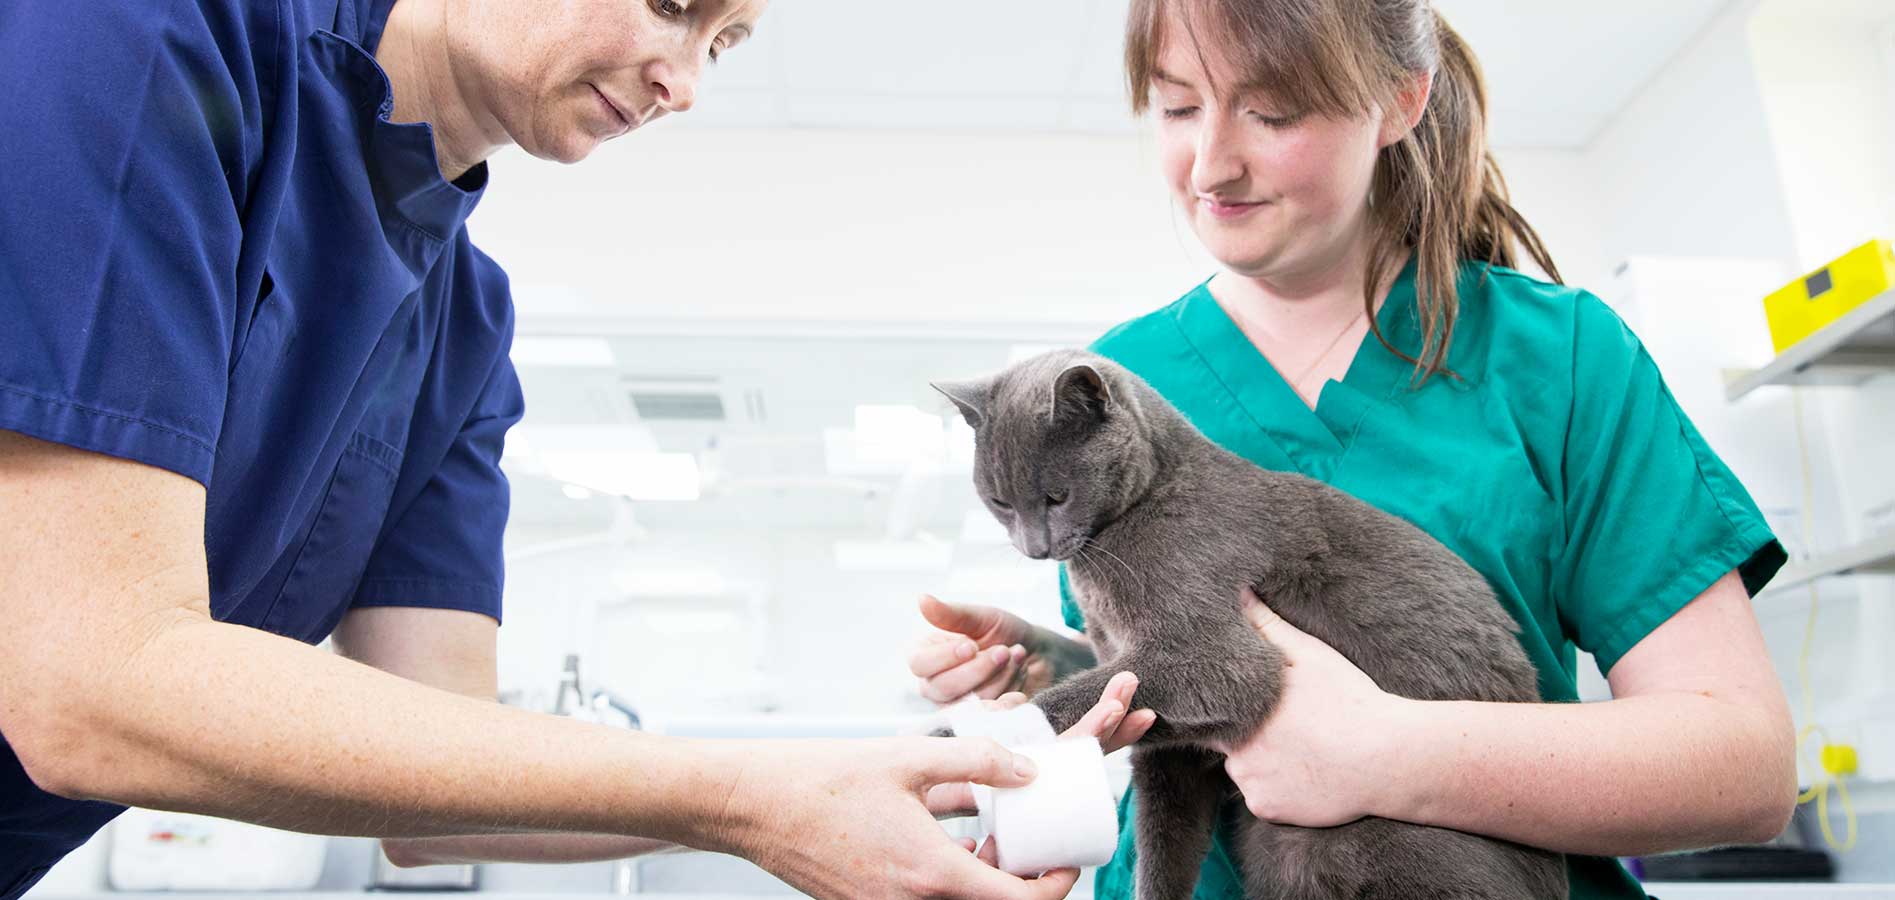 veterinarian developing new skills